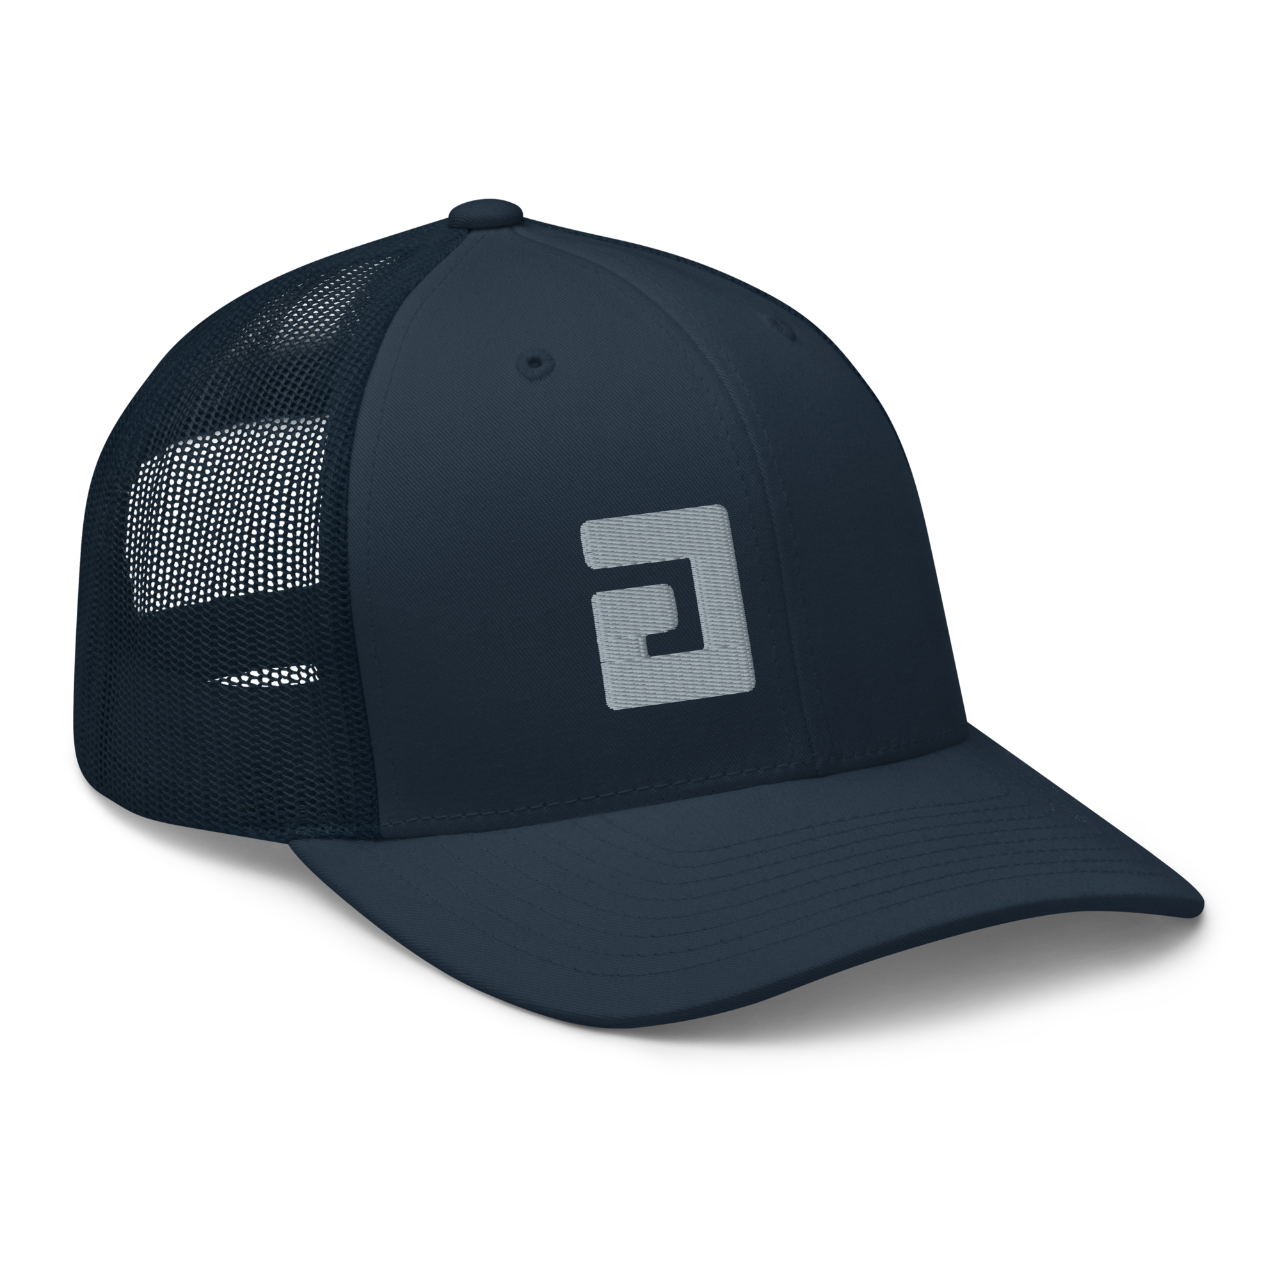 axsgtr axess electronics guitar music industry branded merchandise swag trucker cap hat navy grey